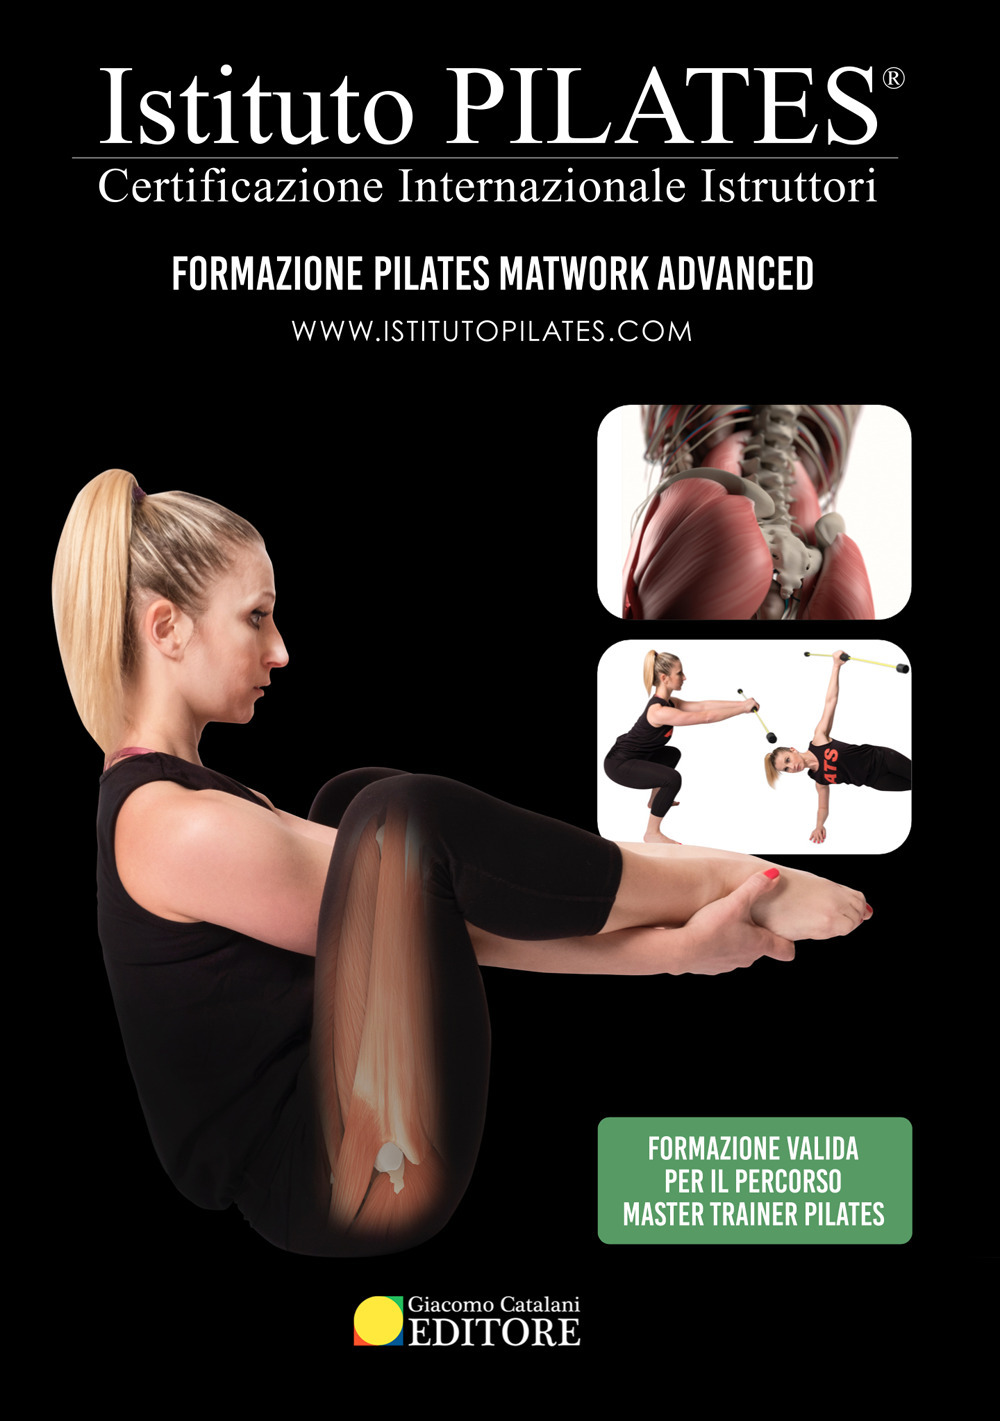 Istituto Pilates®. Dispensa Pilates Matwork Advanced. Certificazione Internazionale Istruttori